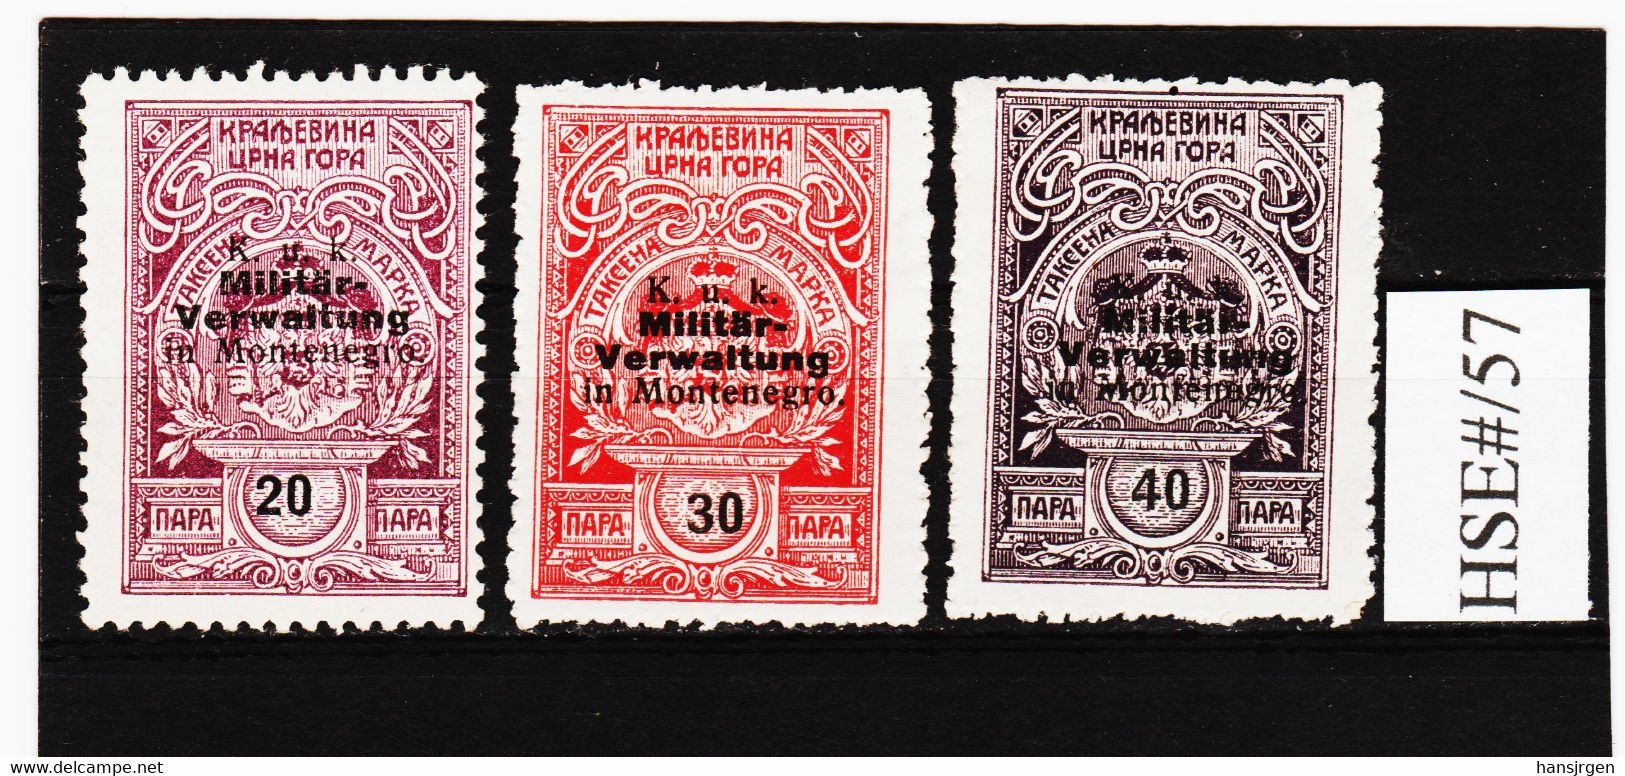 HSE#/57 FISKALMARKEN ÖSTERREICH 1917/18 MILITÄRVERWALTUNG MONTENEGRO K.u.K. TAX GEBÜHREMARKEN Gummiert - Revenue Stamps